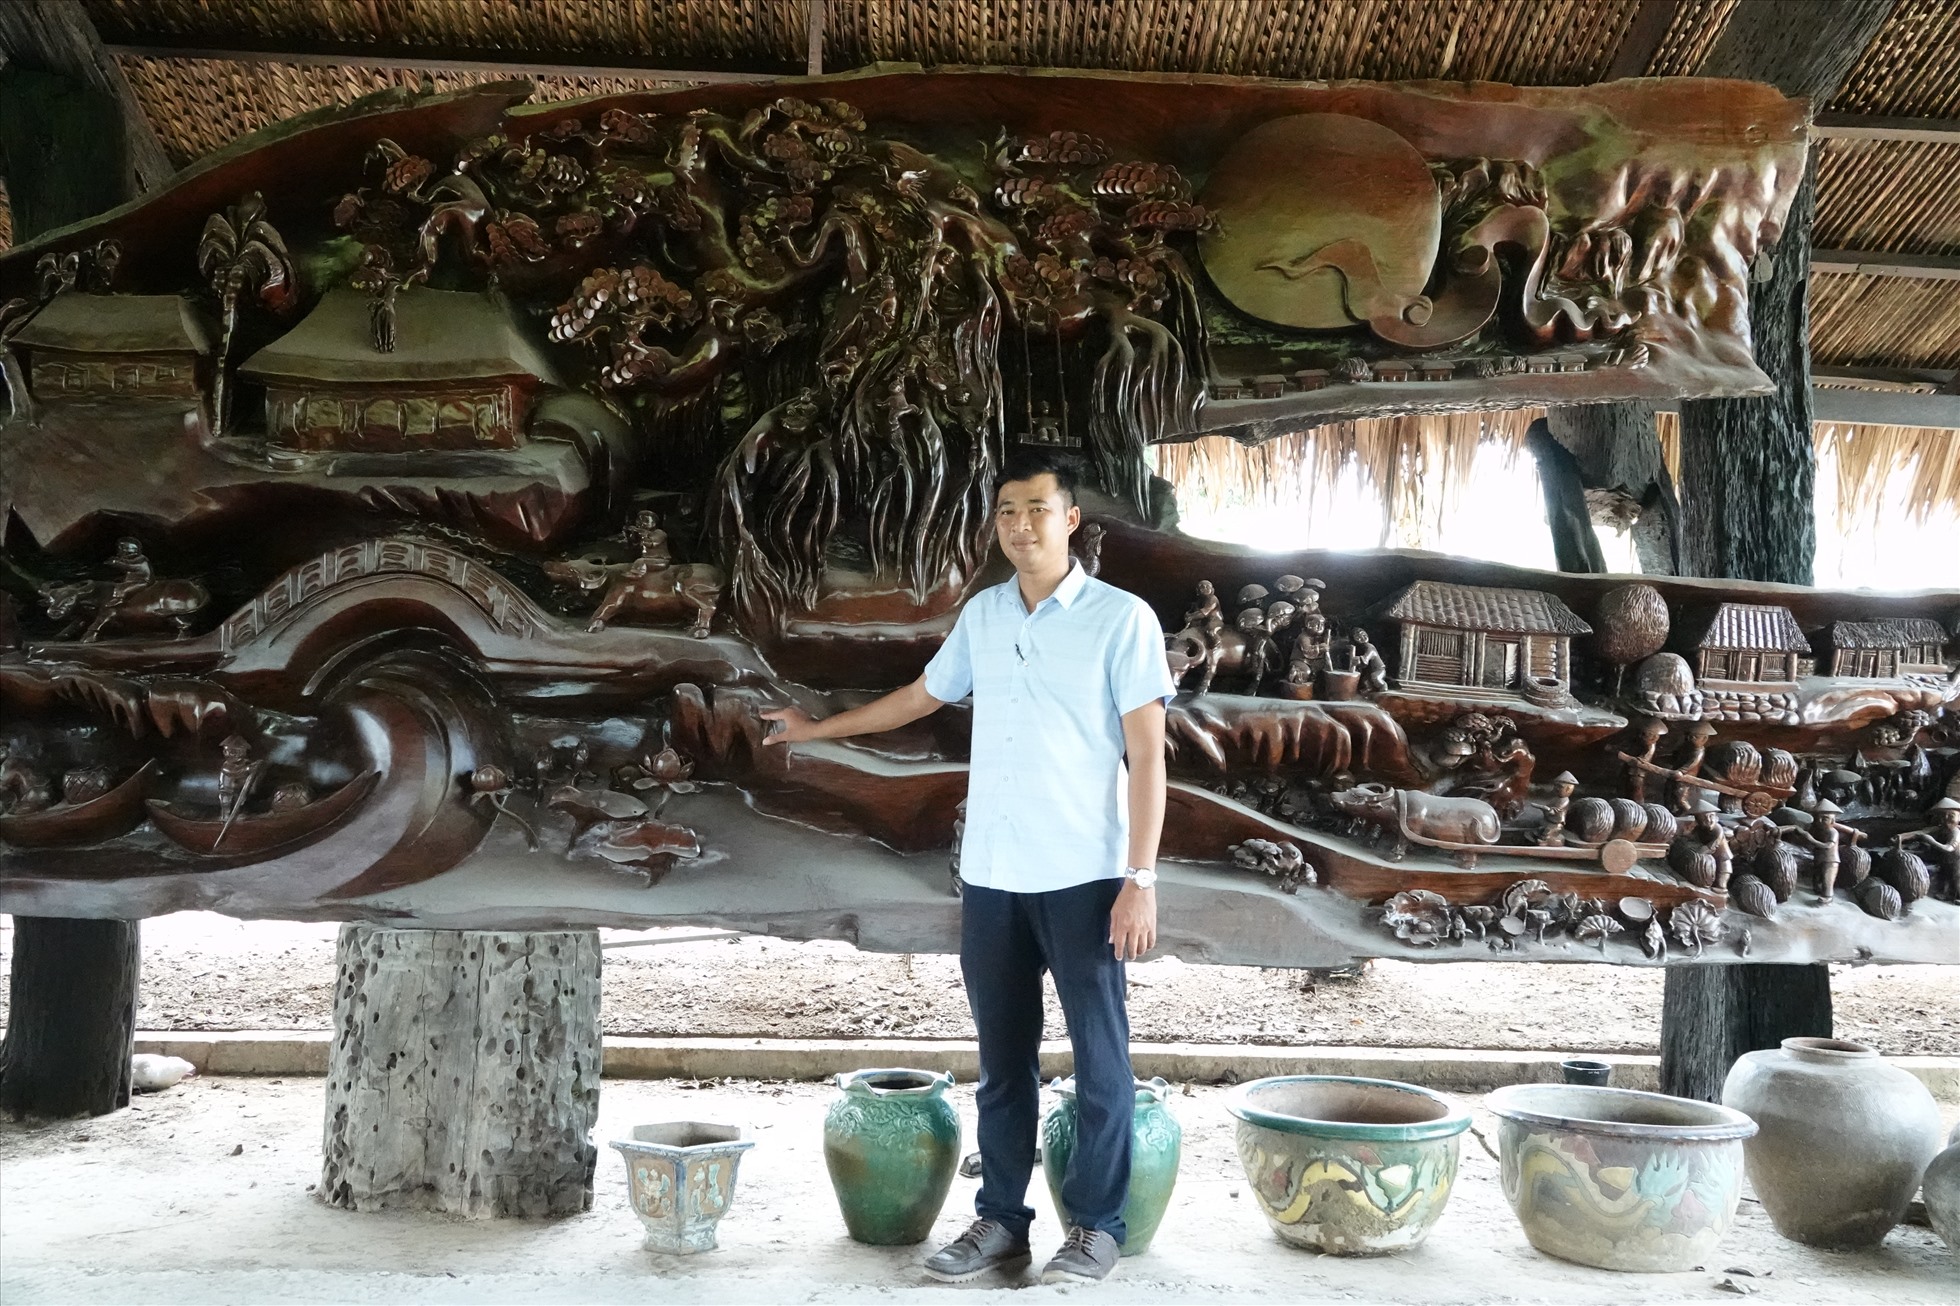 Ông Phan Văn Khánh (gọi ông Nghỉ bằng cậu) -  Giám đốc Khu du lịch Mỹ Luông cho biết, sau 15 năm sưu tầm, ông Nghỉ sở hữu hơn 3.000 m3 gỗ lũa. Trong số đó, ông chọn ra những phần ưng ý nhất rồi thuê thợ từ ngoài Bắc vào điêu khắc thành hơn 50 tác phẩm nghệ thuật.